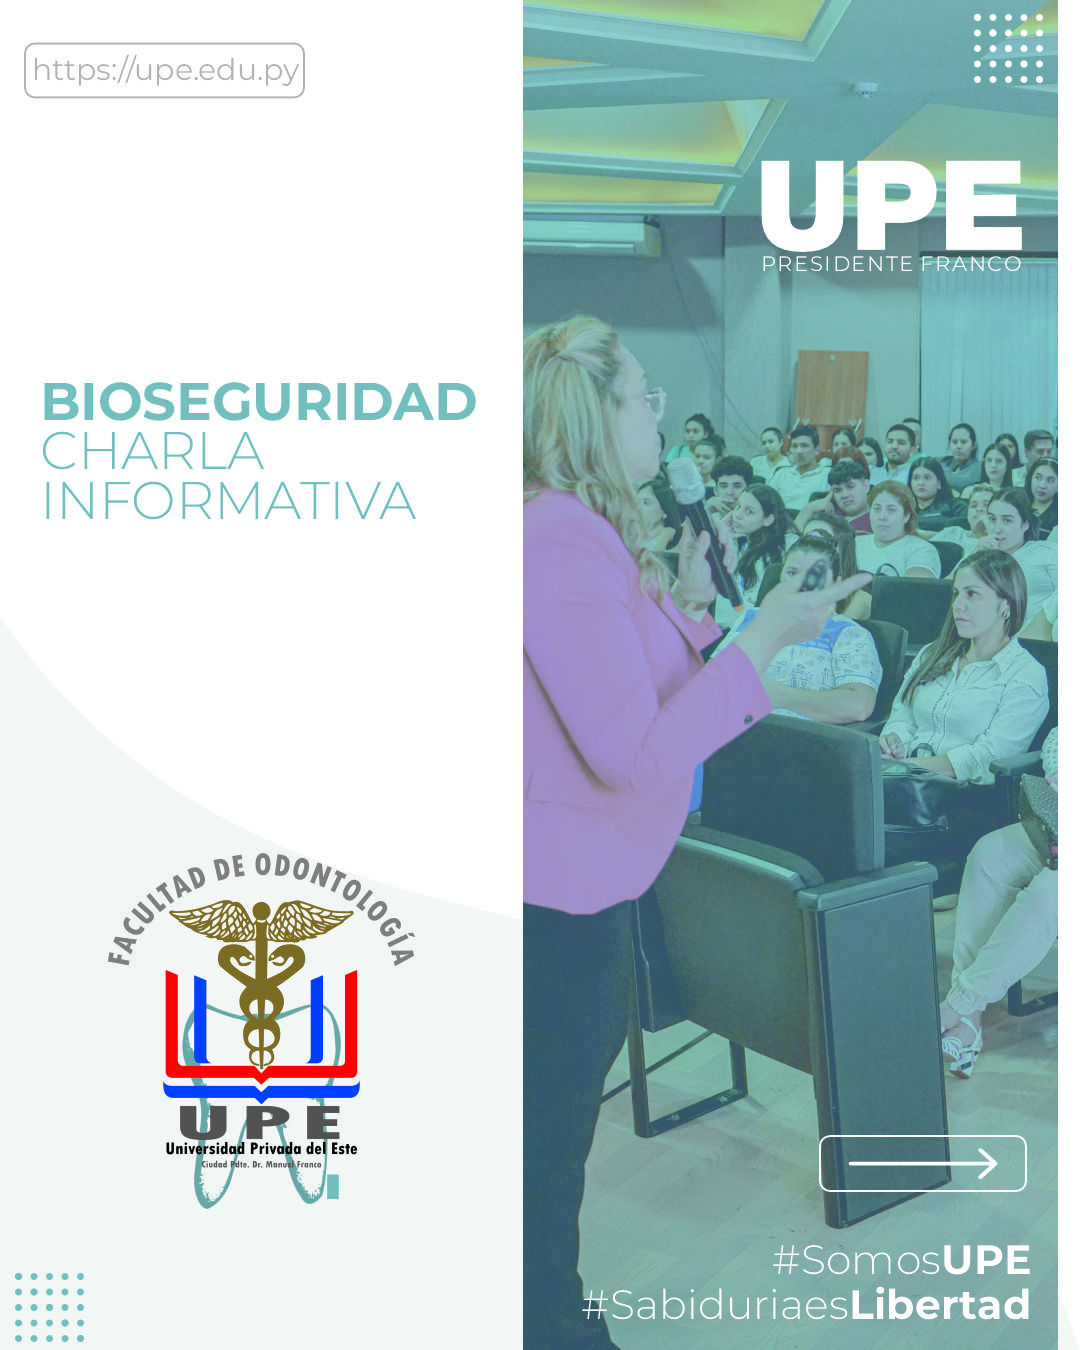 Bioseguridad Odontológica - Charla Informativa en la UPE